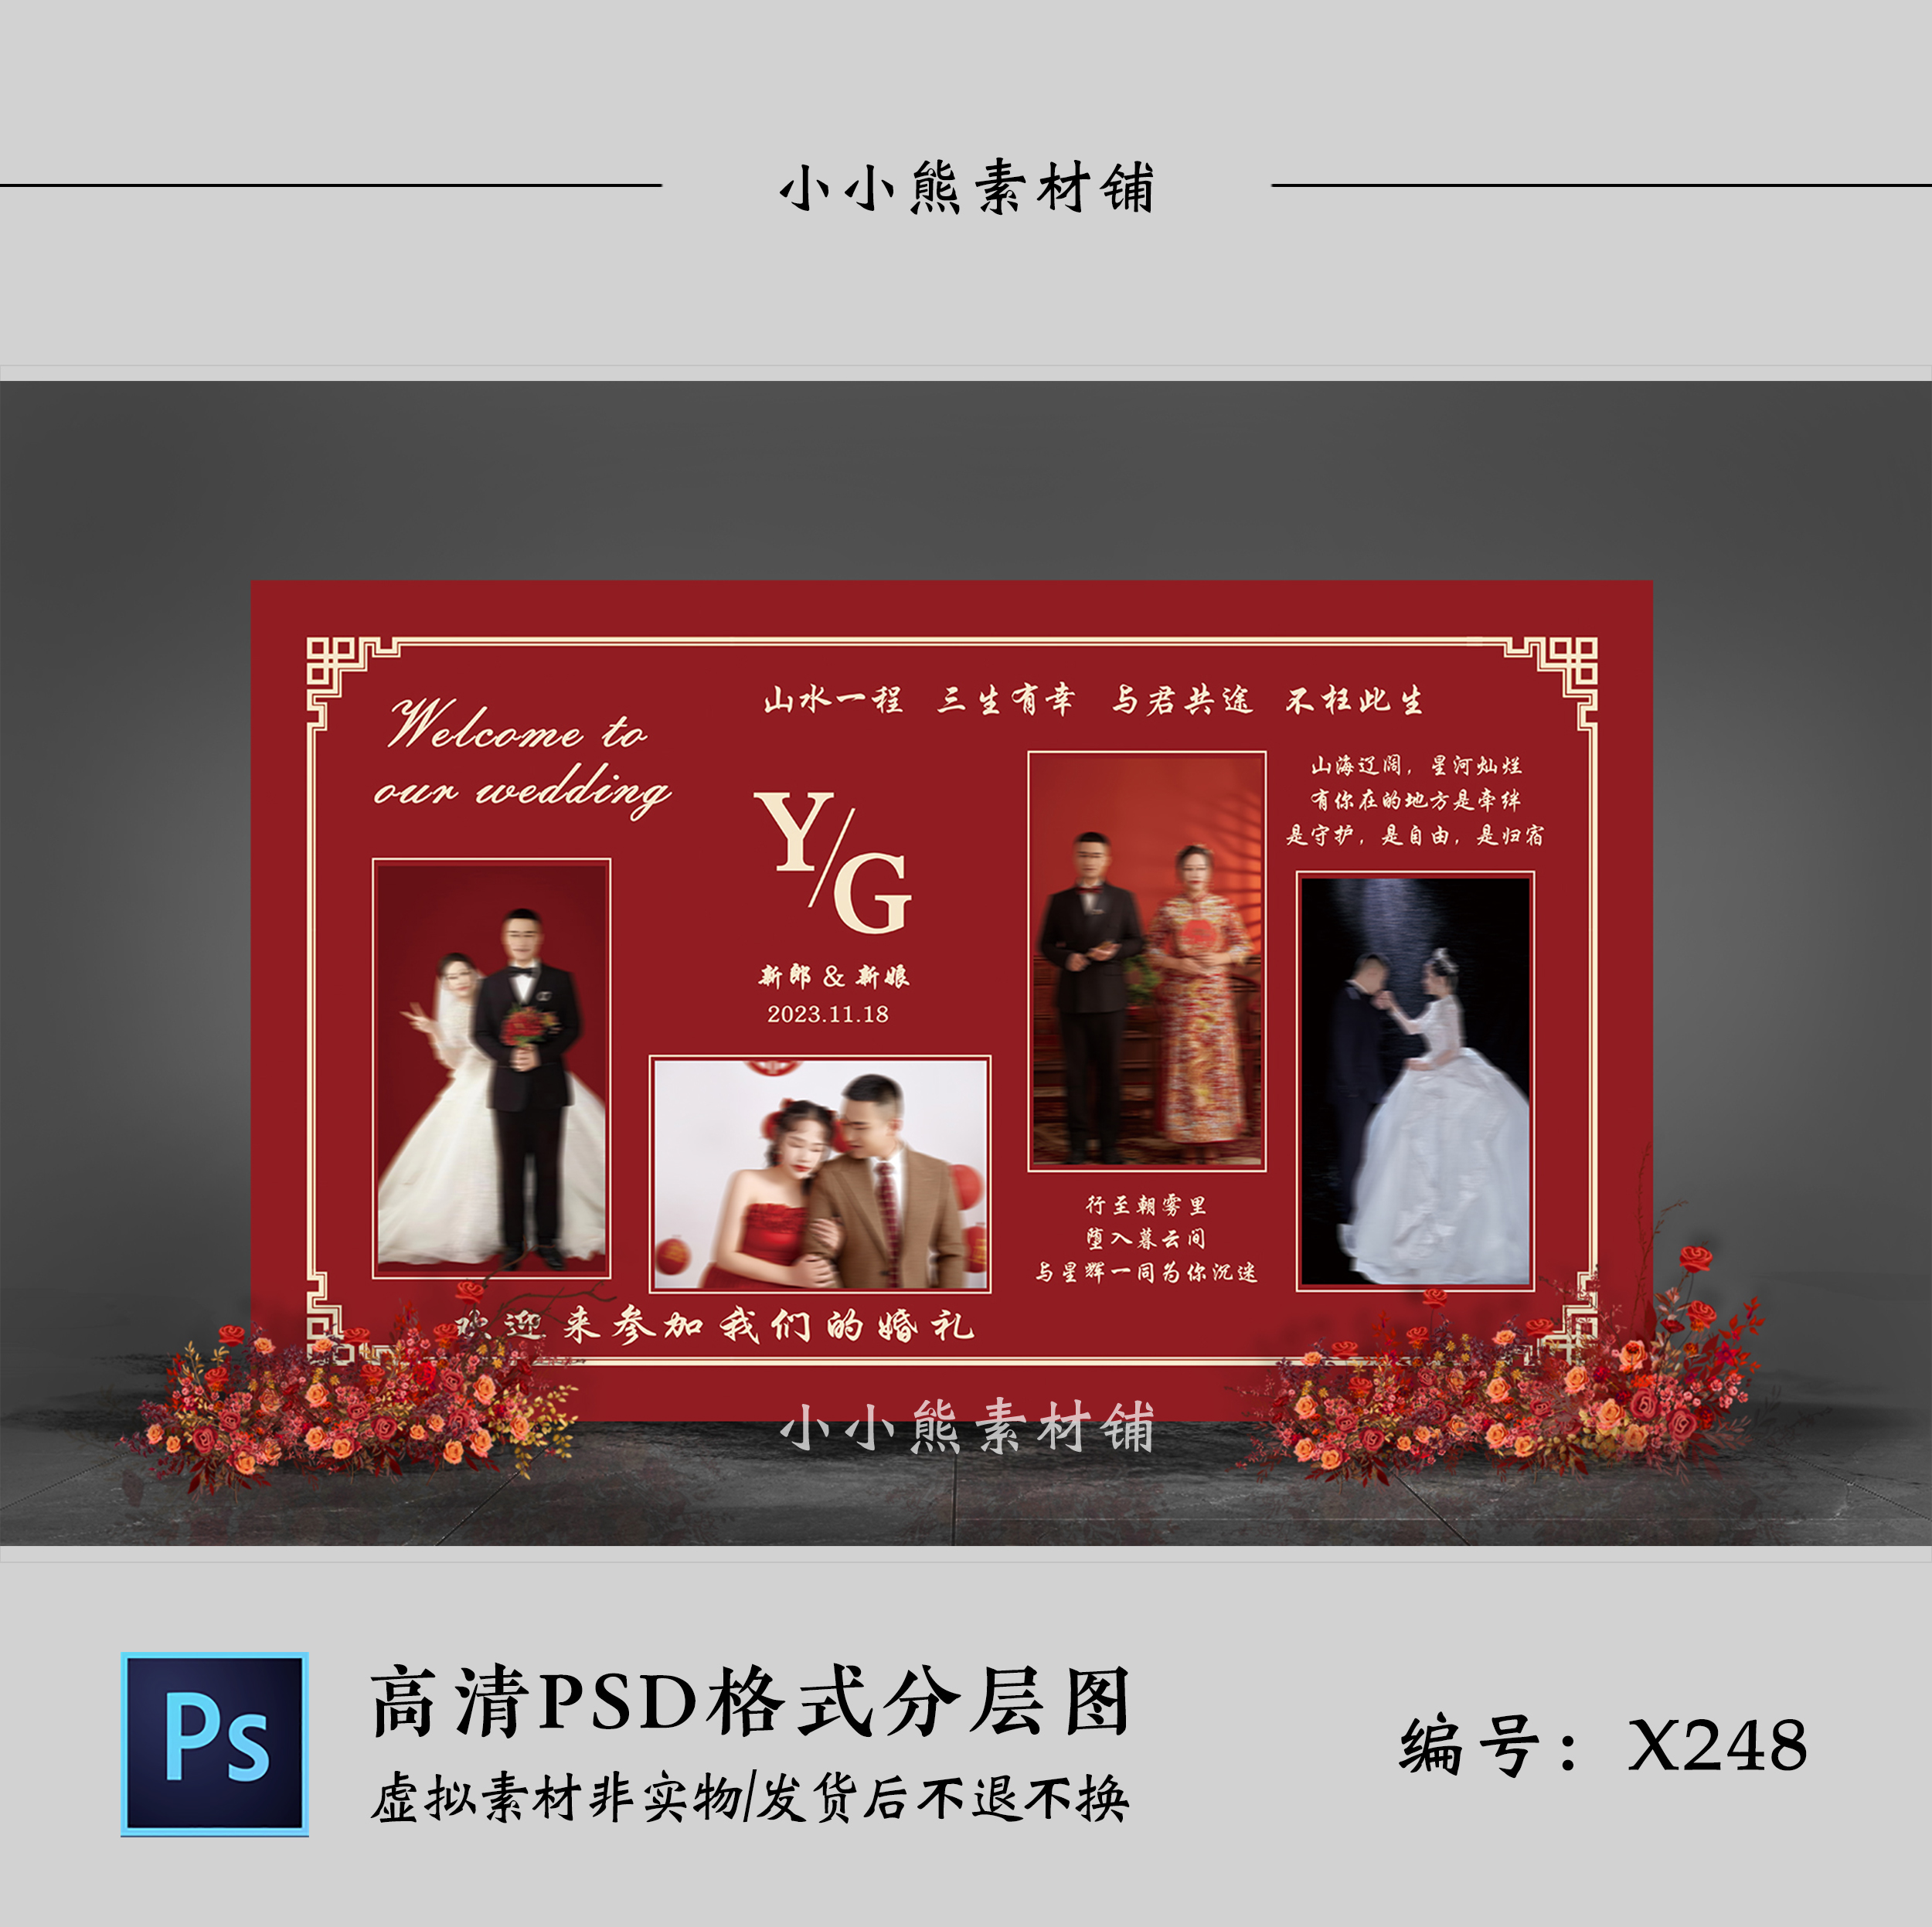 红色中式婚礼设计效果图 结婚照片背景墙喷绘布置PSD素材模板